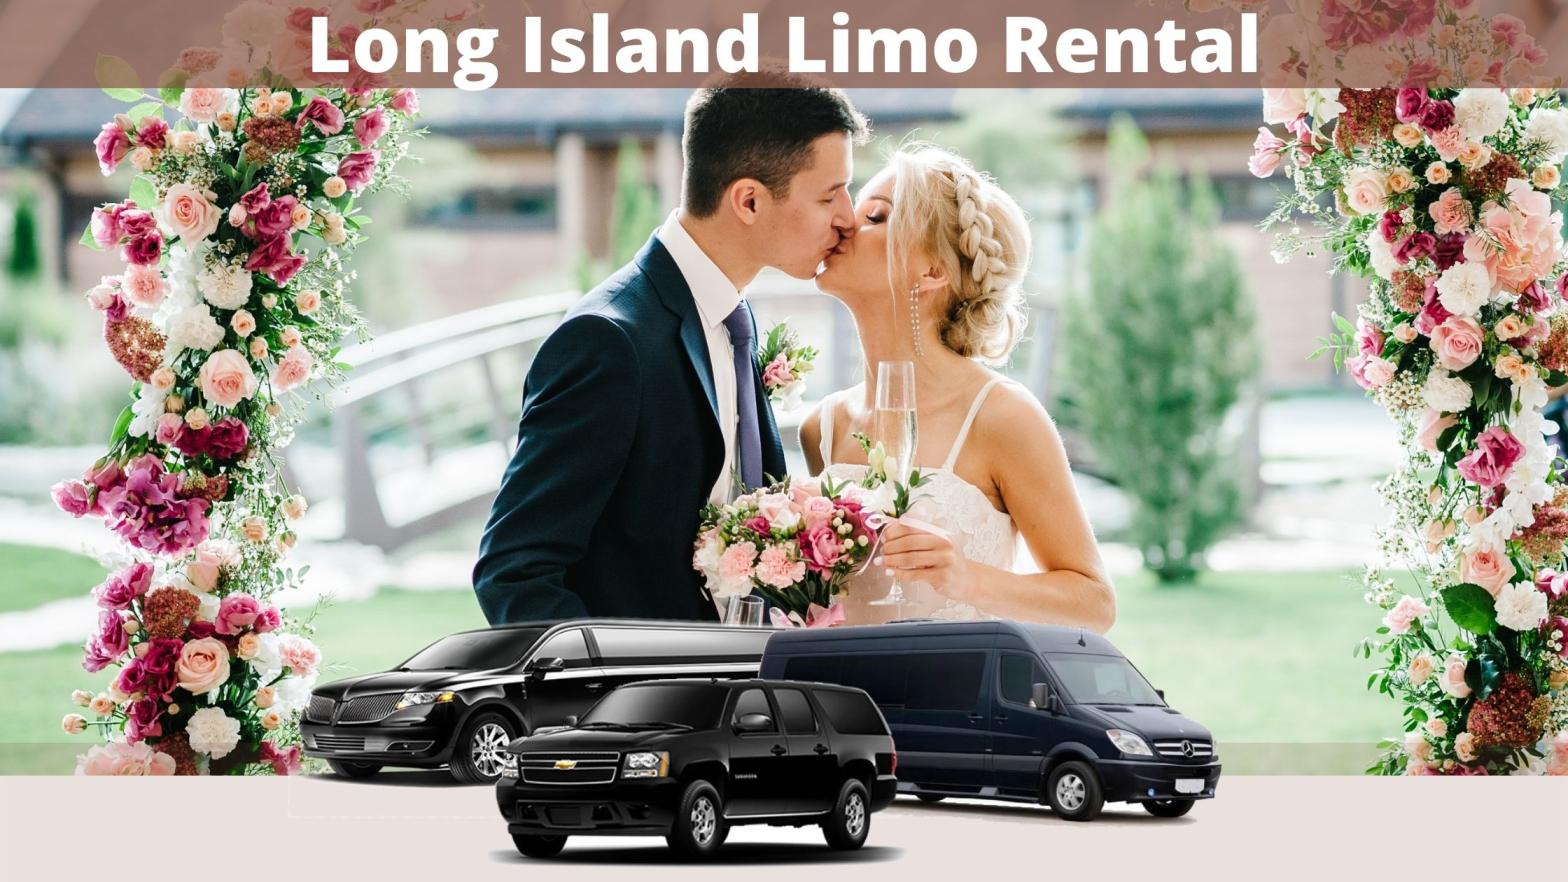 Long Island Limo Rental Wedding